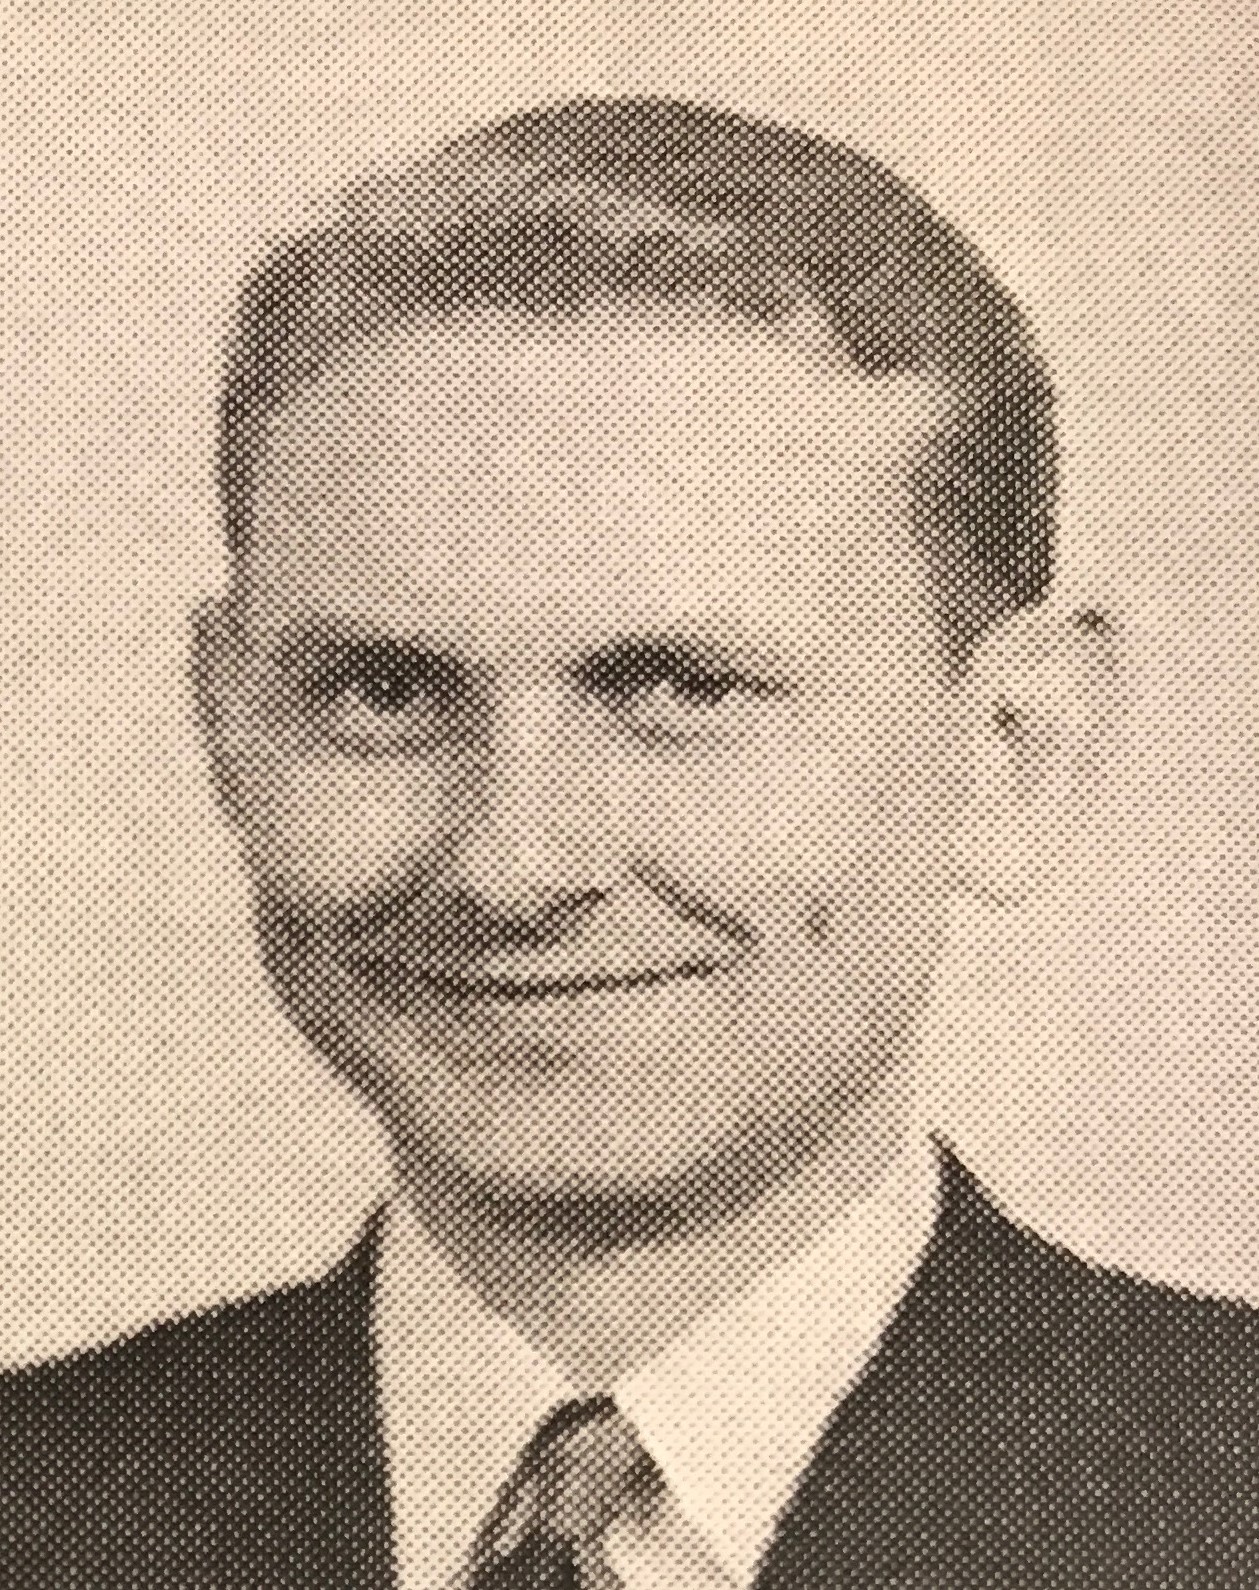 Spencer Hamlin Osborn (1921 - 2006) Profile